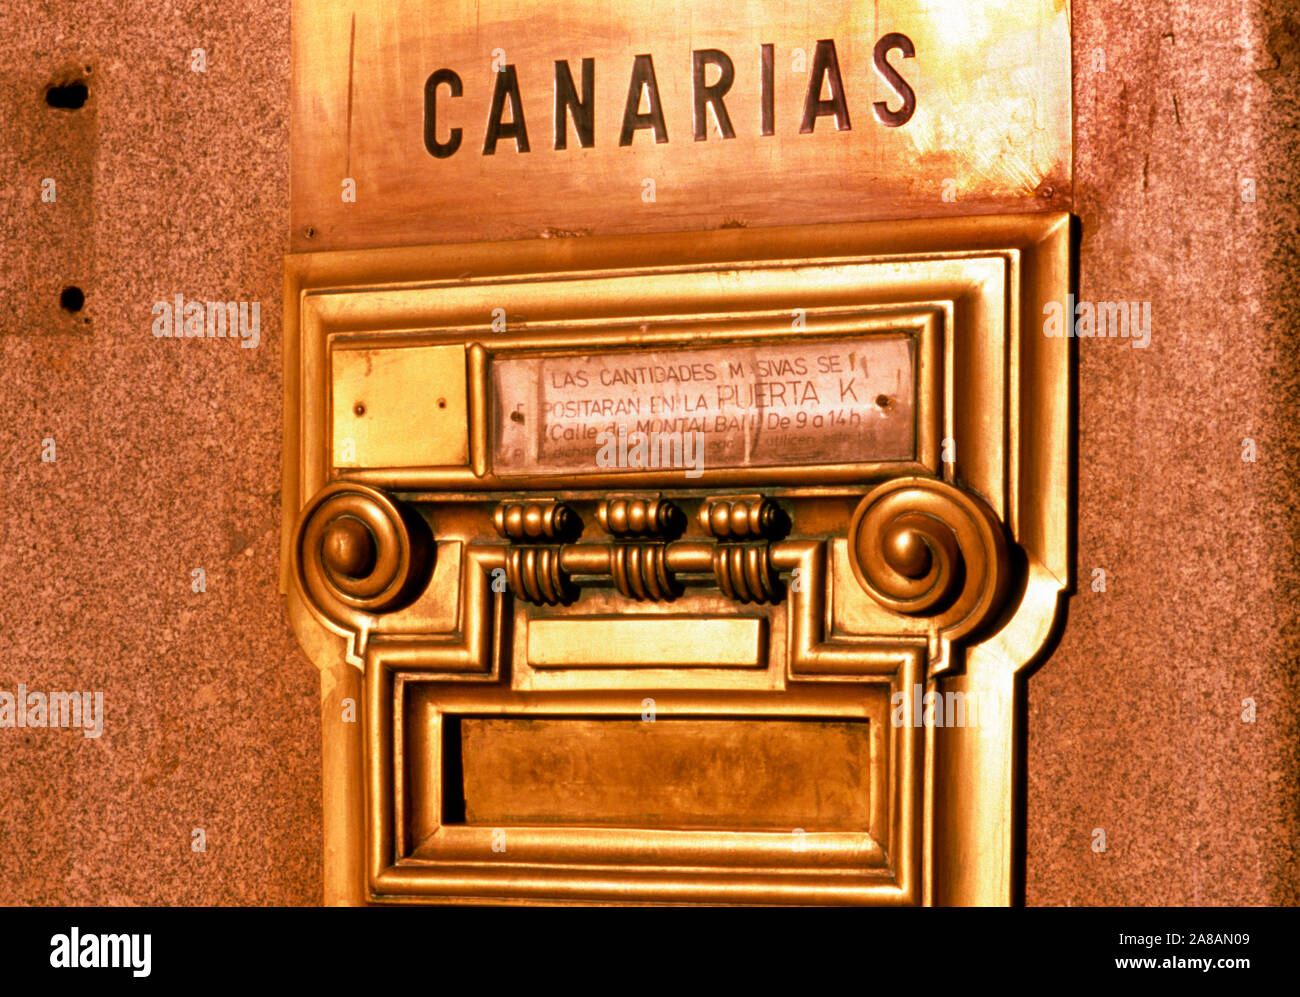 Ranura de correo con texto en español en la puerta, Islas Canarias, España Foto de stock